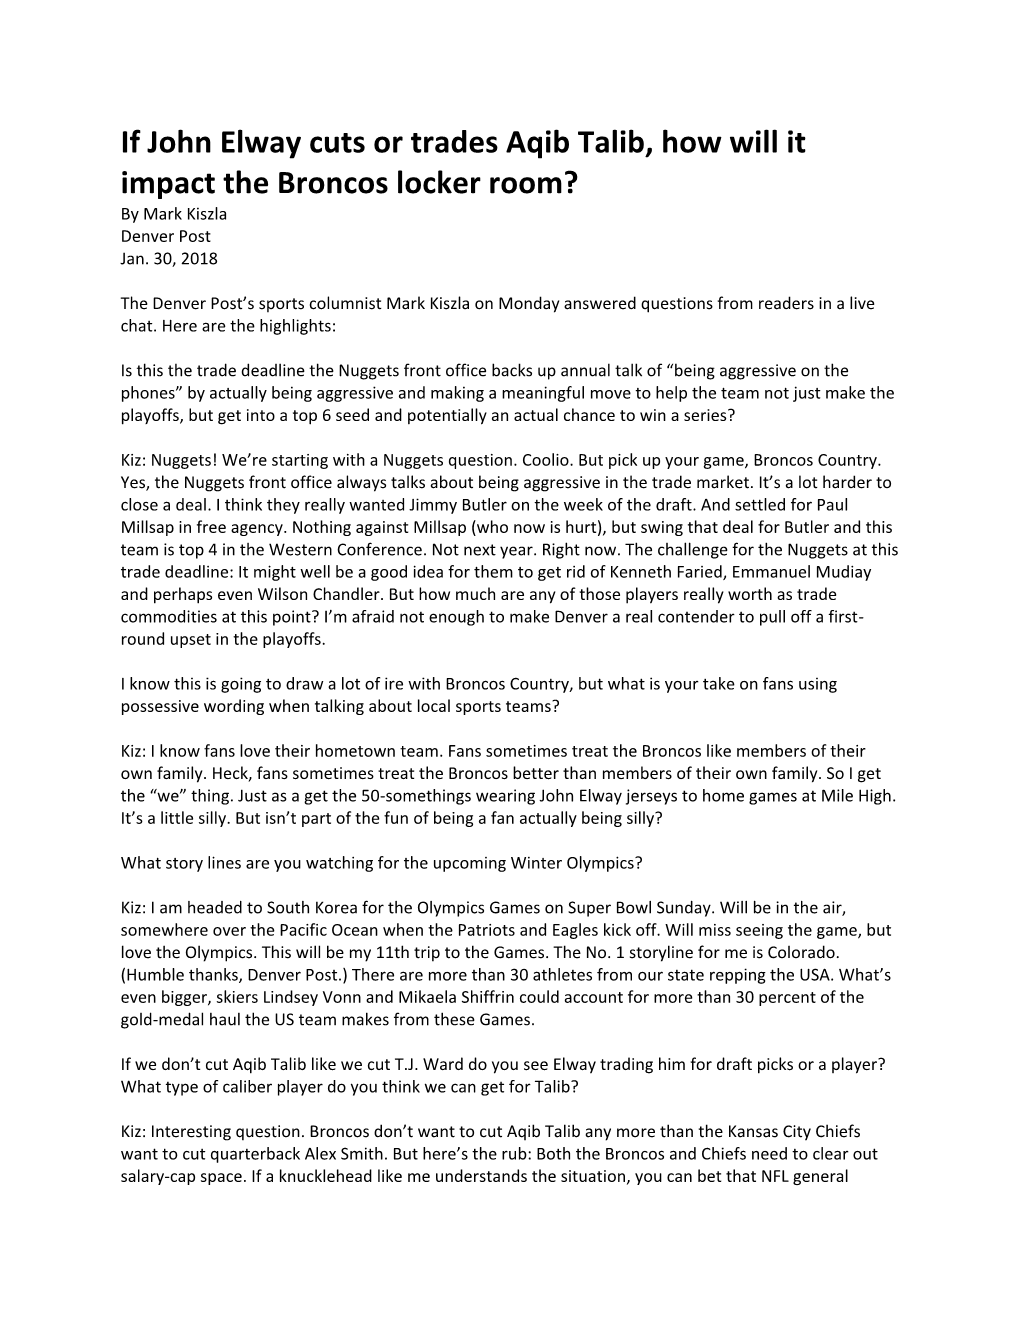 If John Elway Cuts Or Trades Aqib Talib, How Will It Impact the Broncos Locker Room? by Mark Kiszla Denver Post Jan